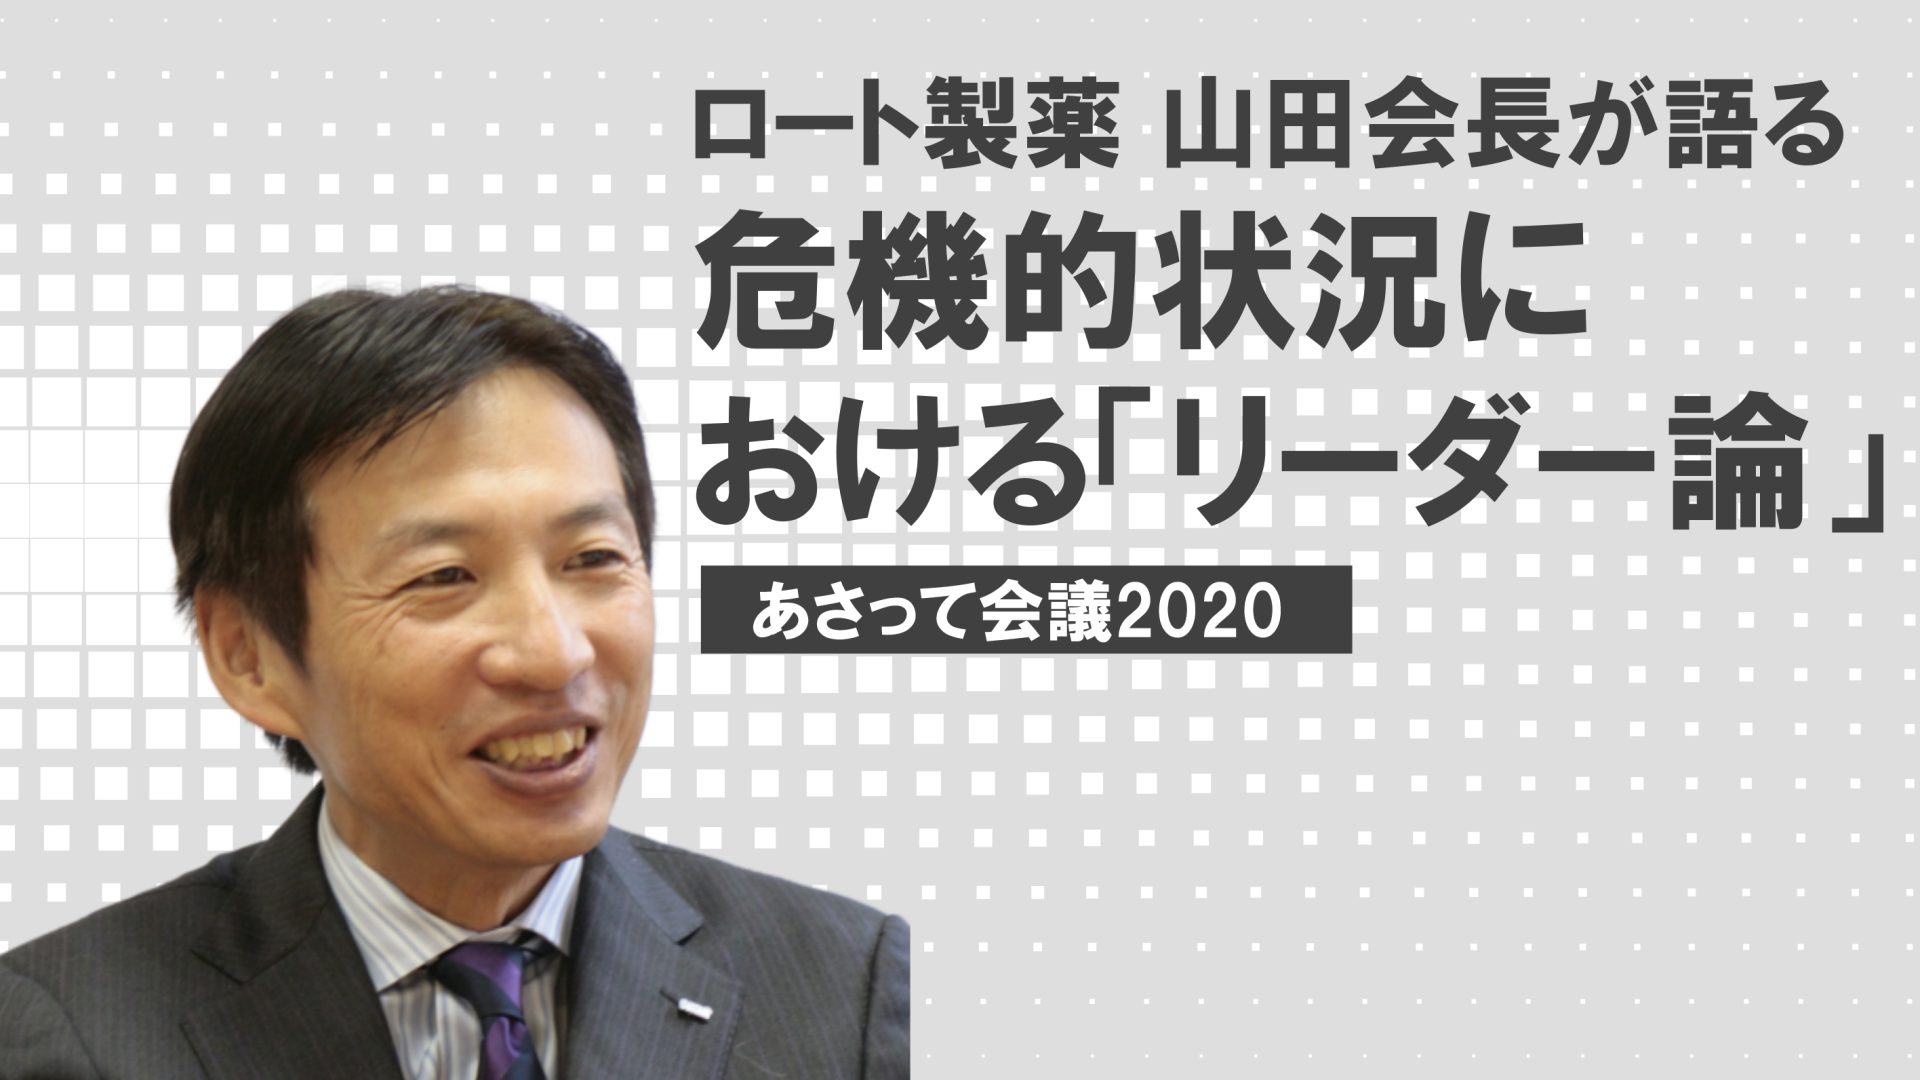 ロート製薬 山田会長が語る「危機的状況におけるリーダー論」〜自分の頭で考え、自分ですぐに行動する